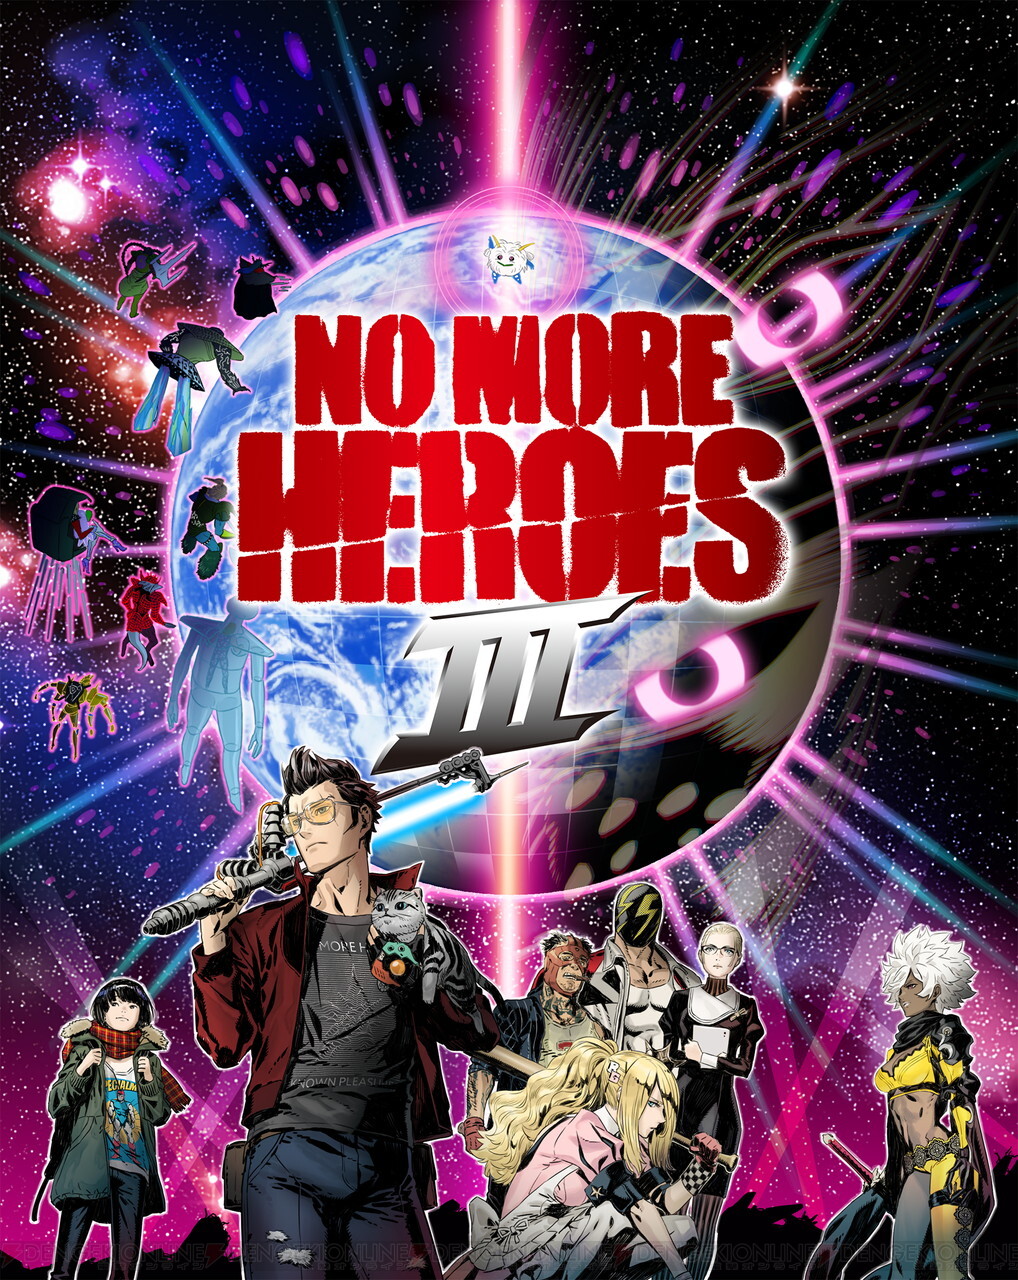 ノーモアヒーローズ3 マルチプラットフォームで本日発売 ヴィレヴァンとのコラボも決定 電撃オンライン